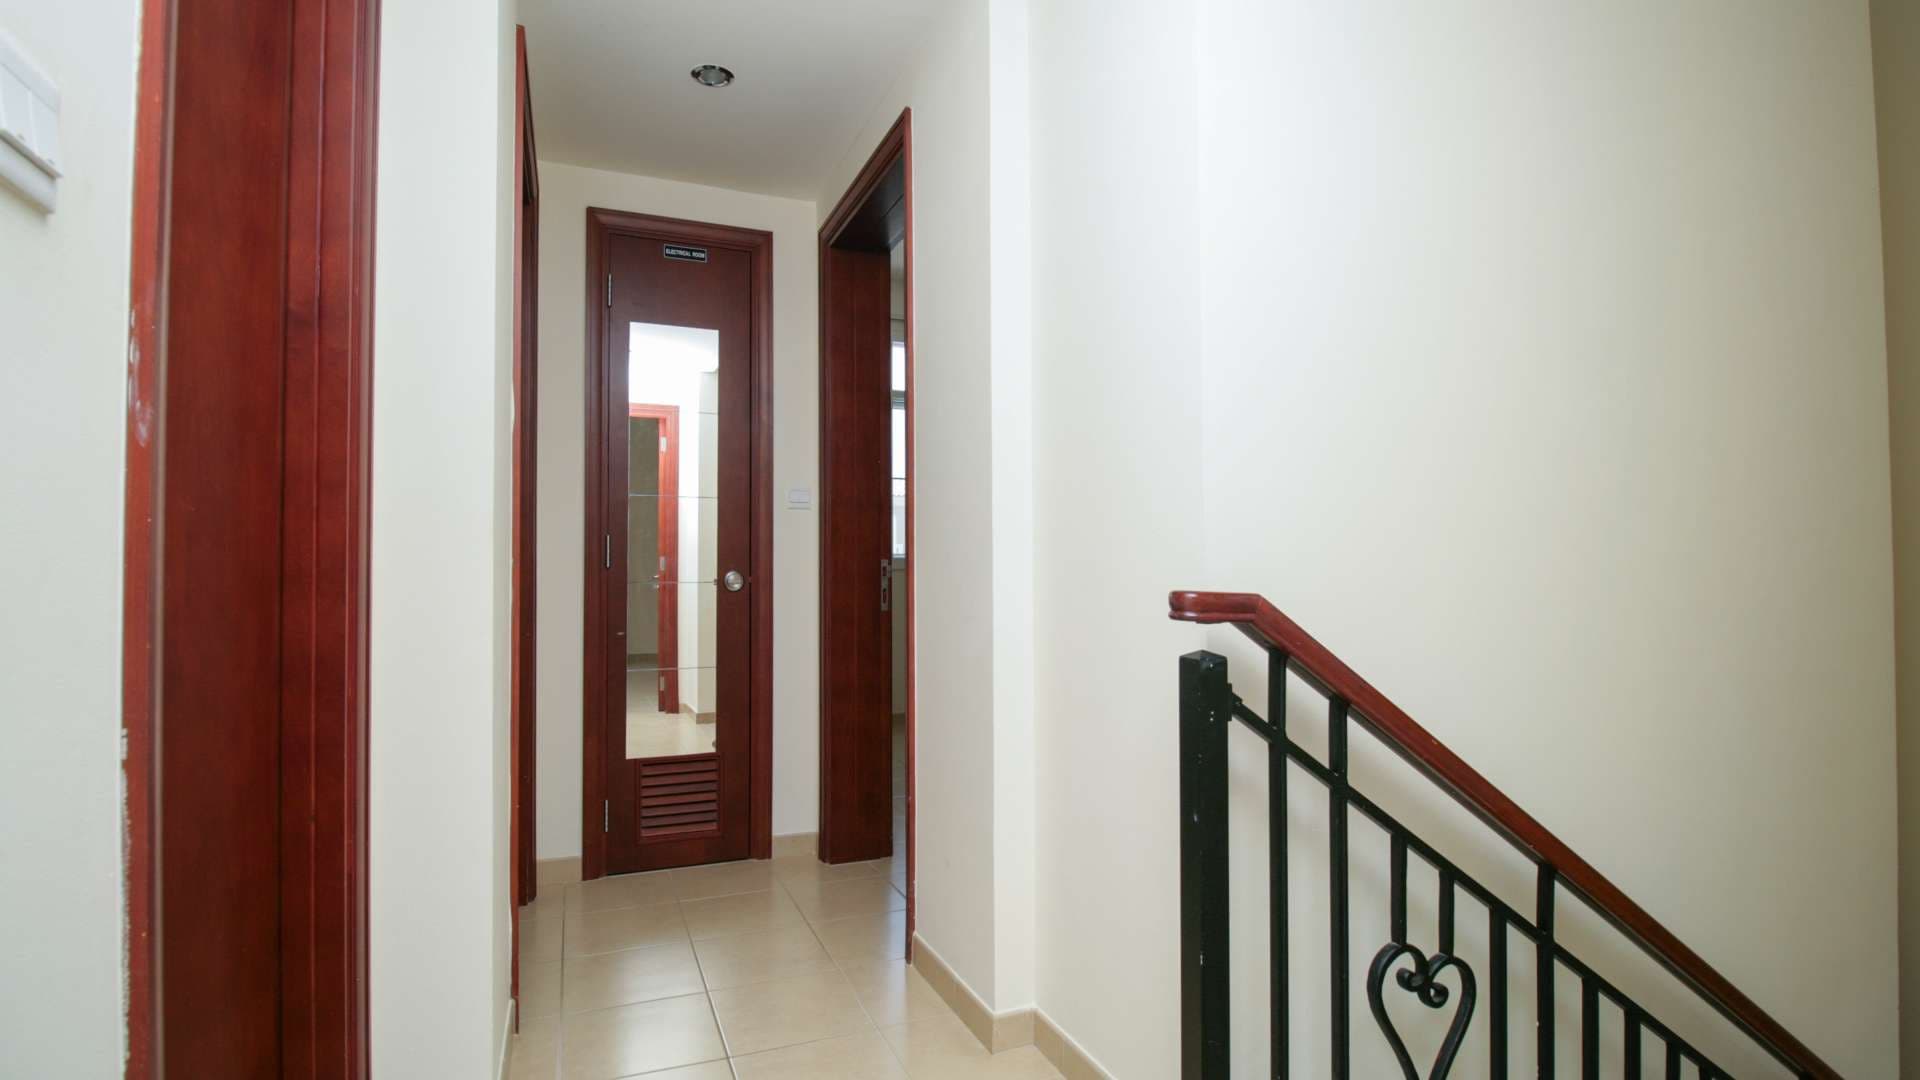  Bedroom Villa For Rent Alma Lp07442 29a7324156850400.jpg